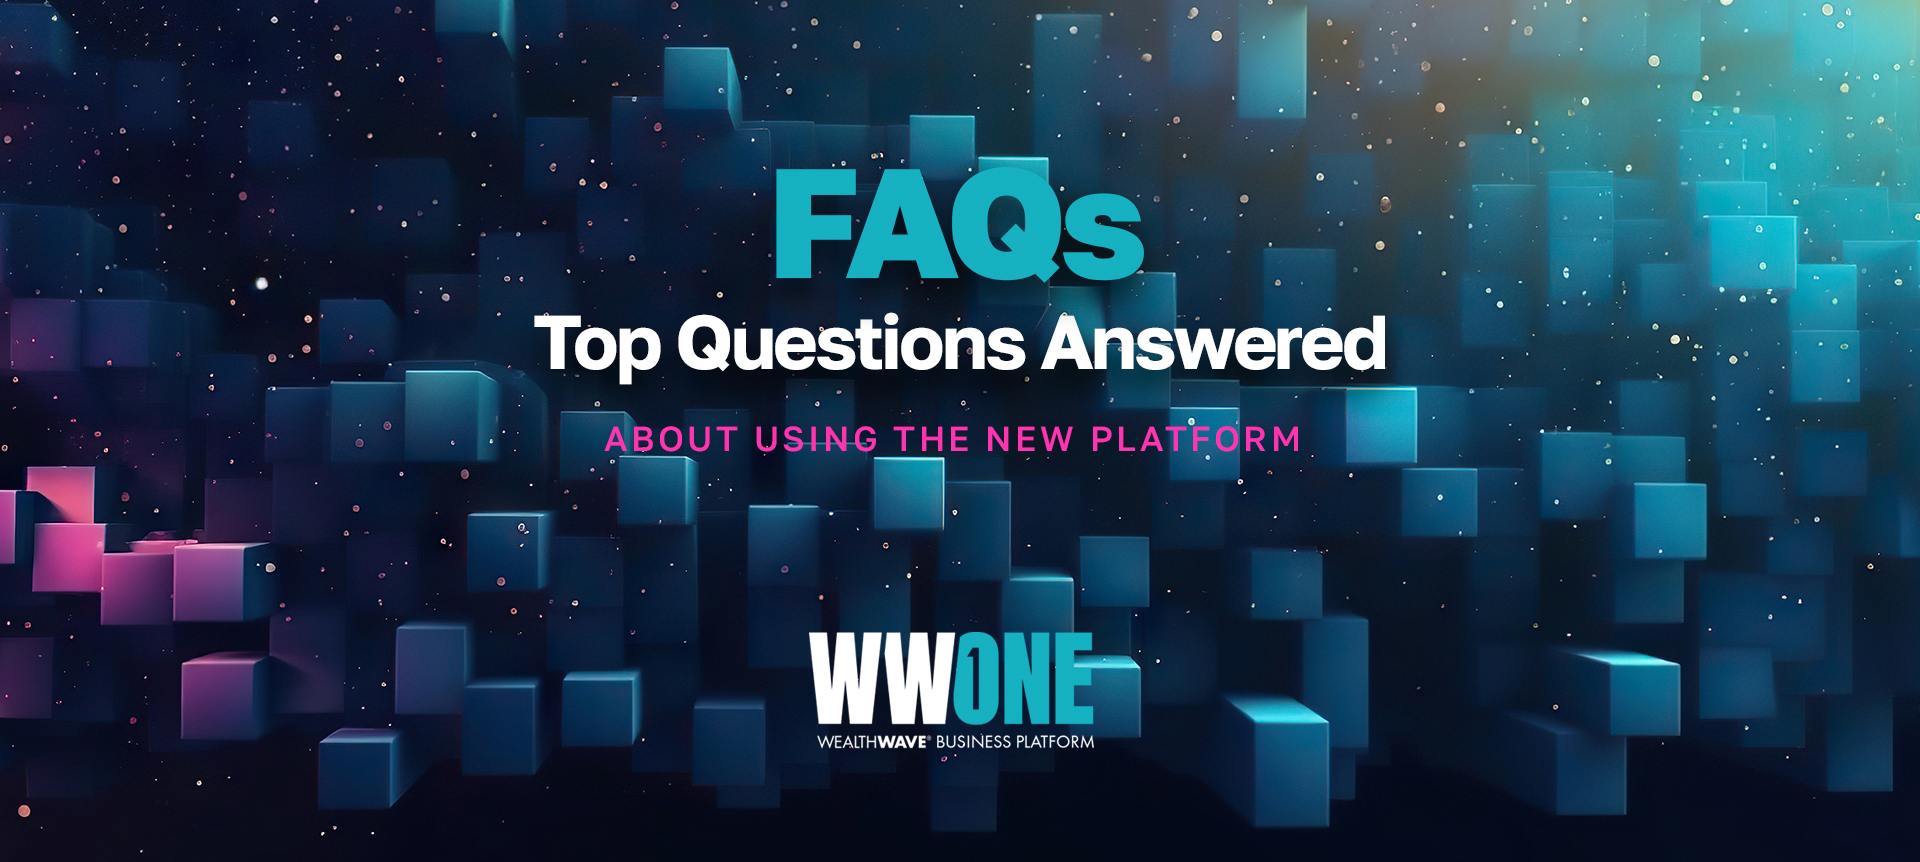 웰스웨이브원 - FAQ: 자주 묻는 질문과 답변